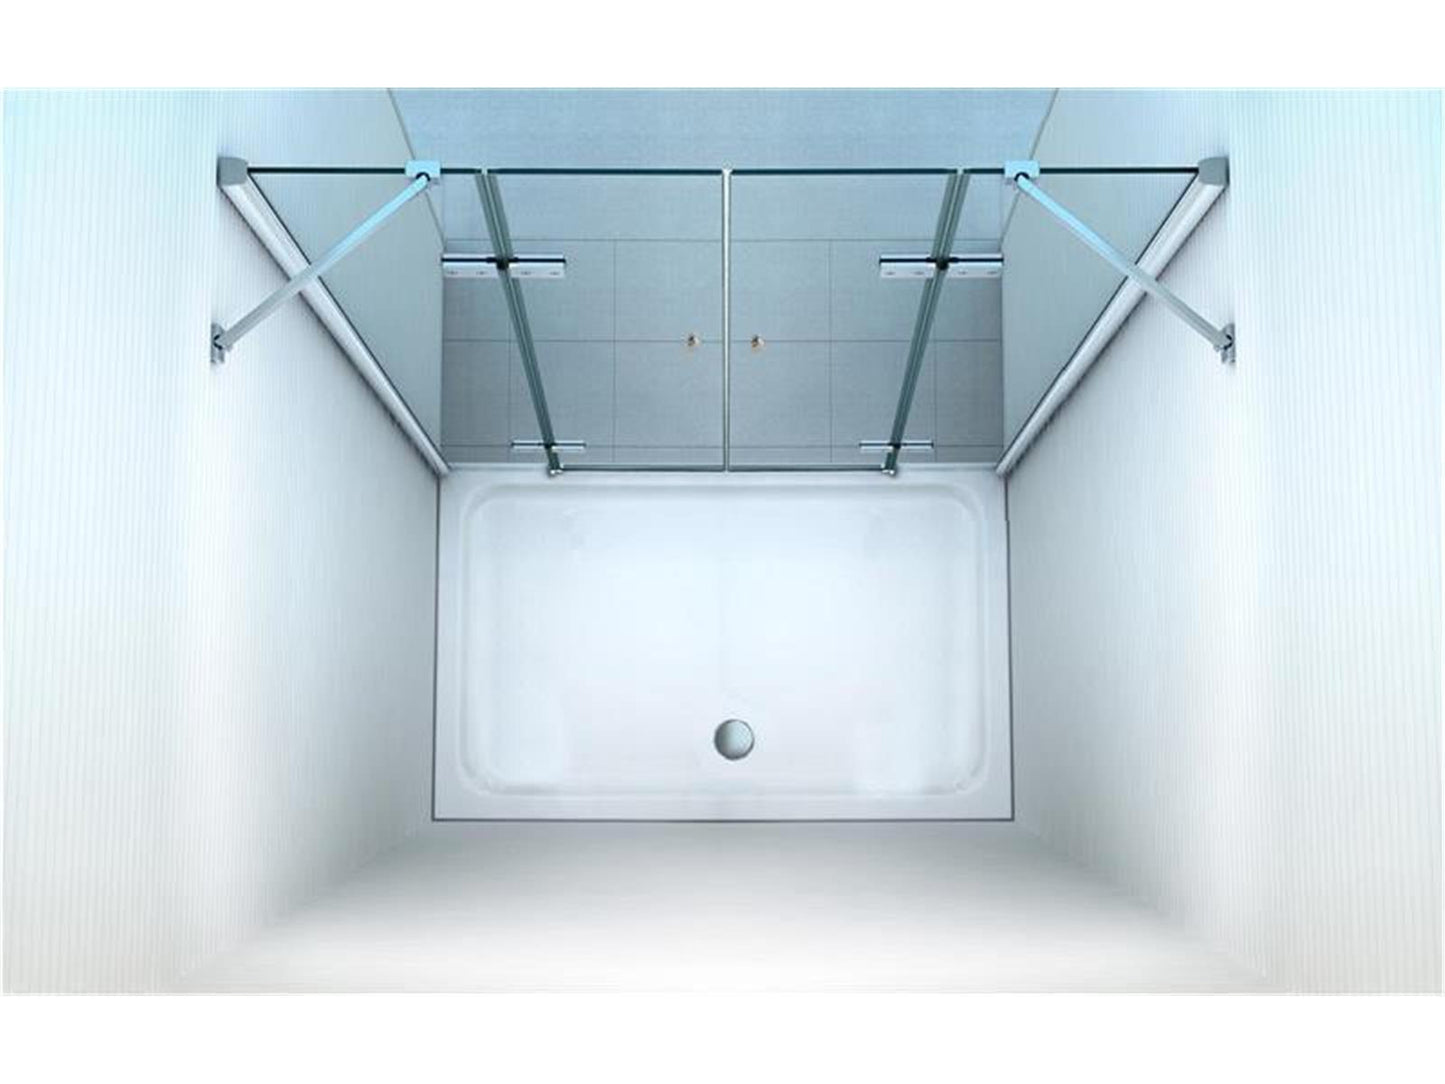 GlasHomeCenter - Cabina de nicho Utah (155 x 195 cm) - vidrio de seguridad templado de 8 mm - sin plato de ducha